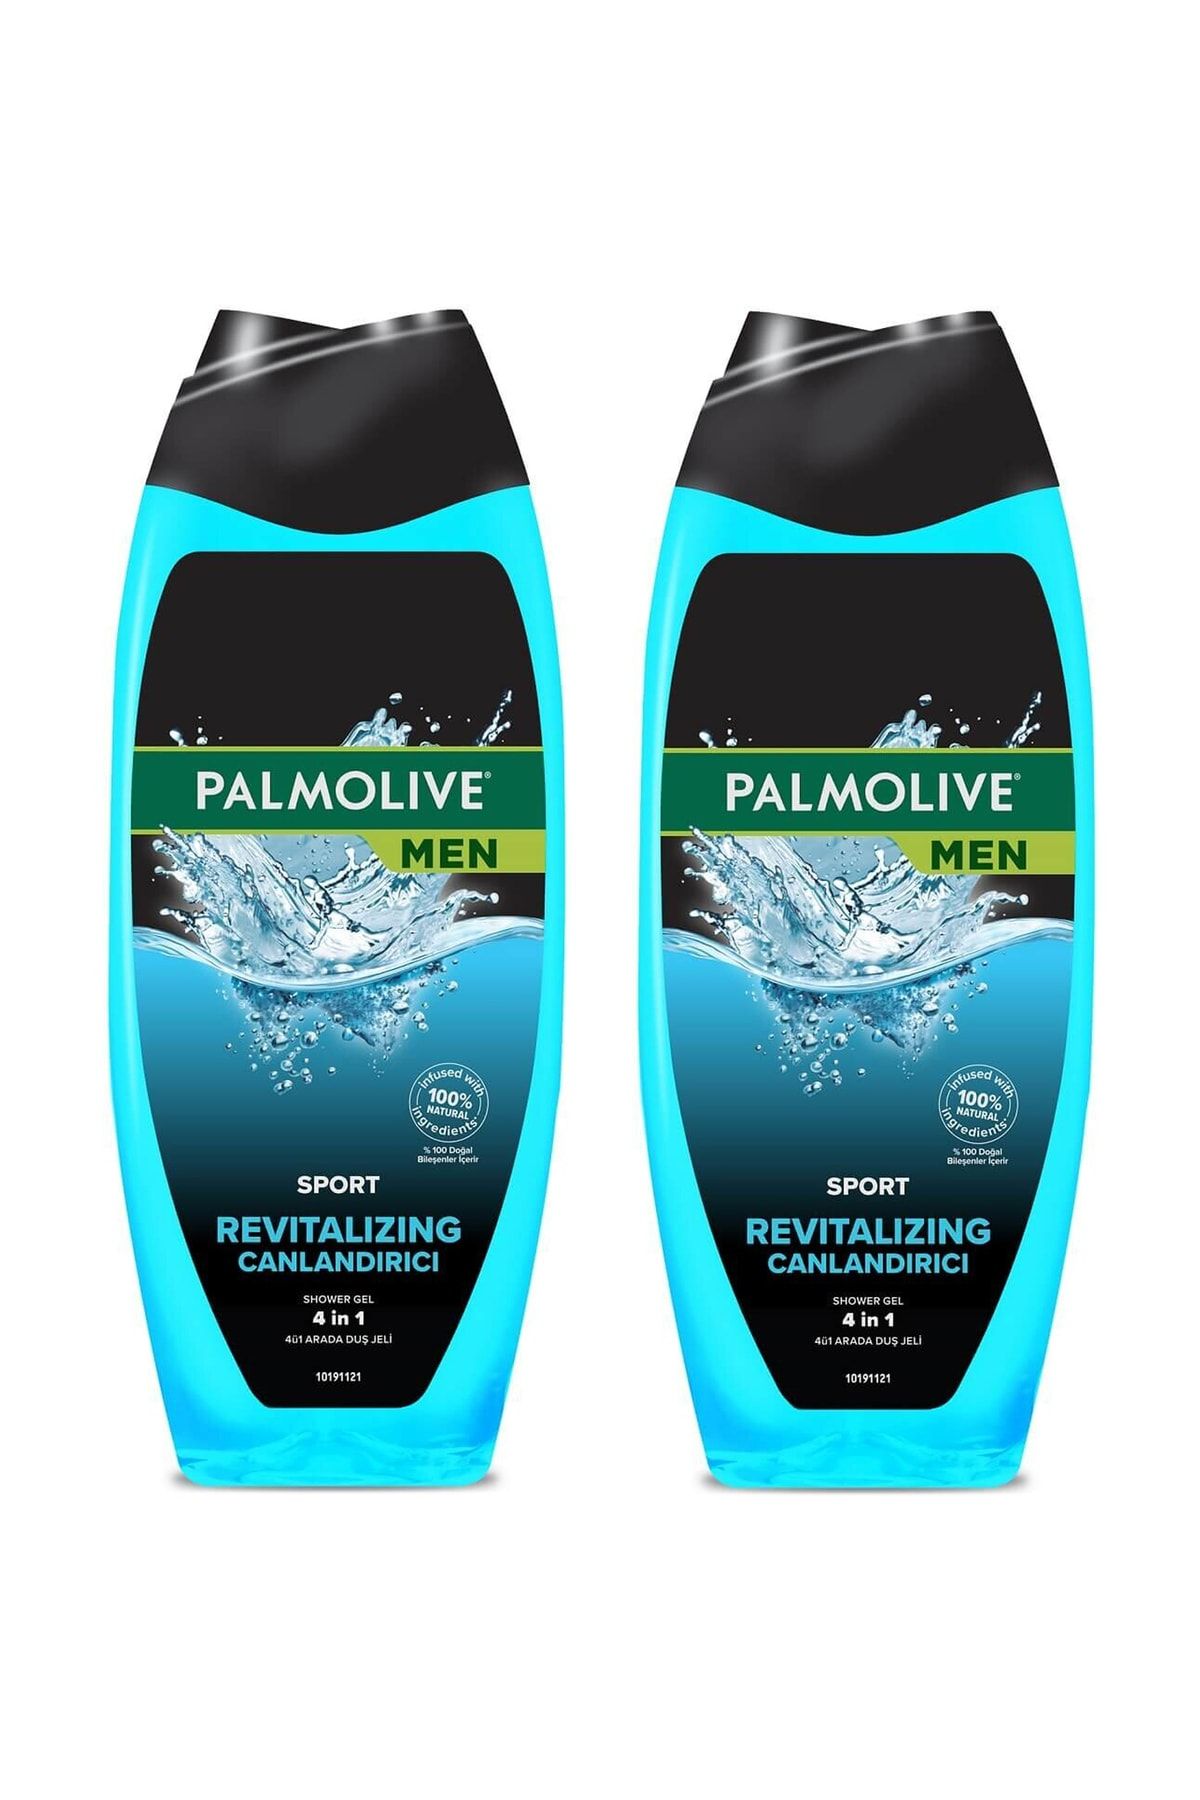 Palmolive Men Sport 4 Ü 1 Arada Canlandırıcı Duş Jeli 500 Ml 2 Adet